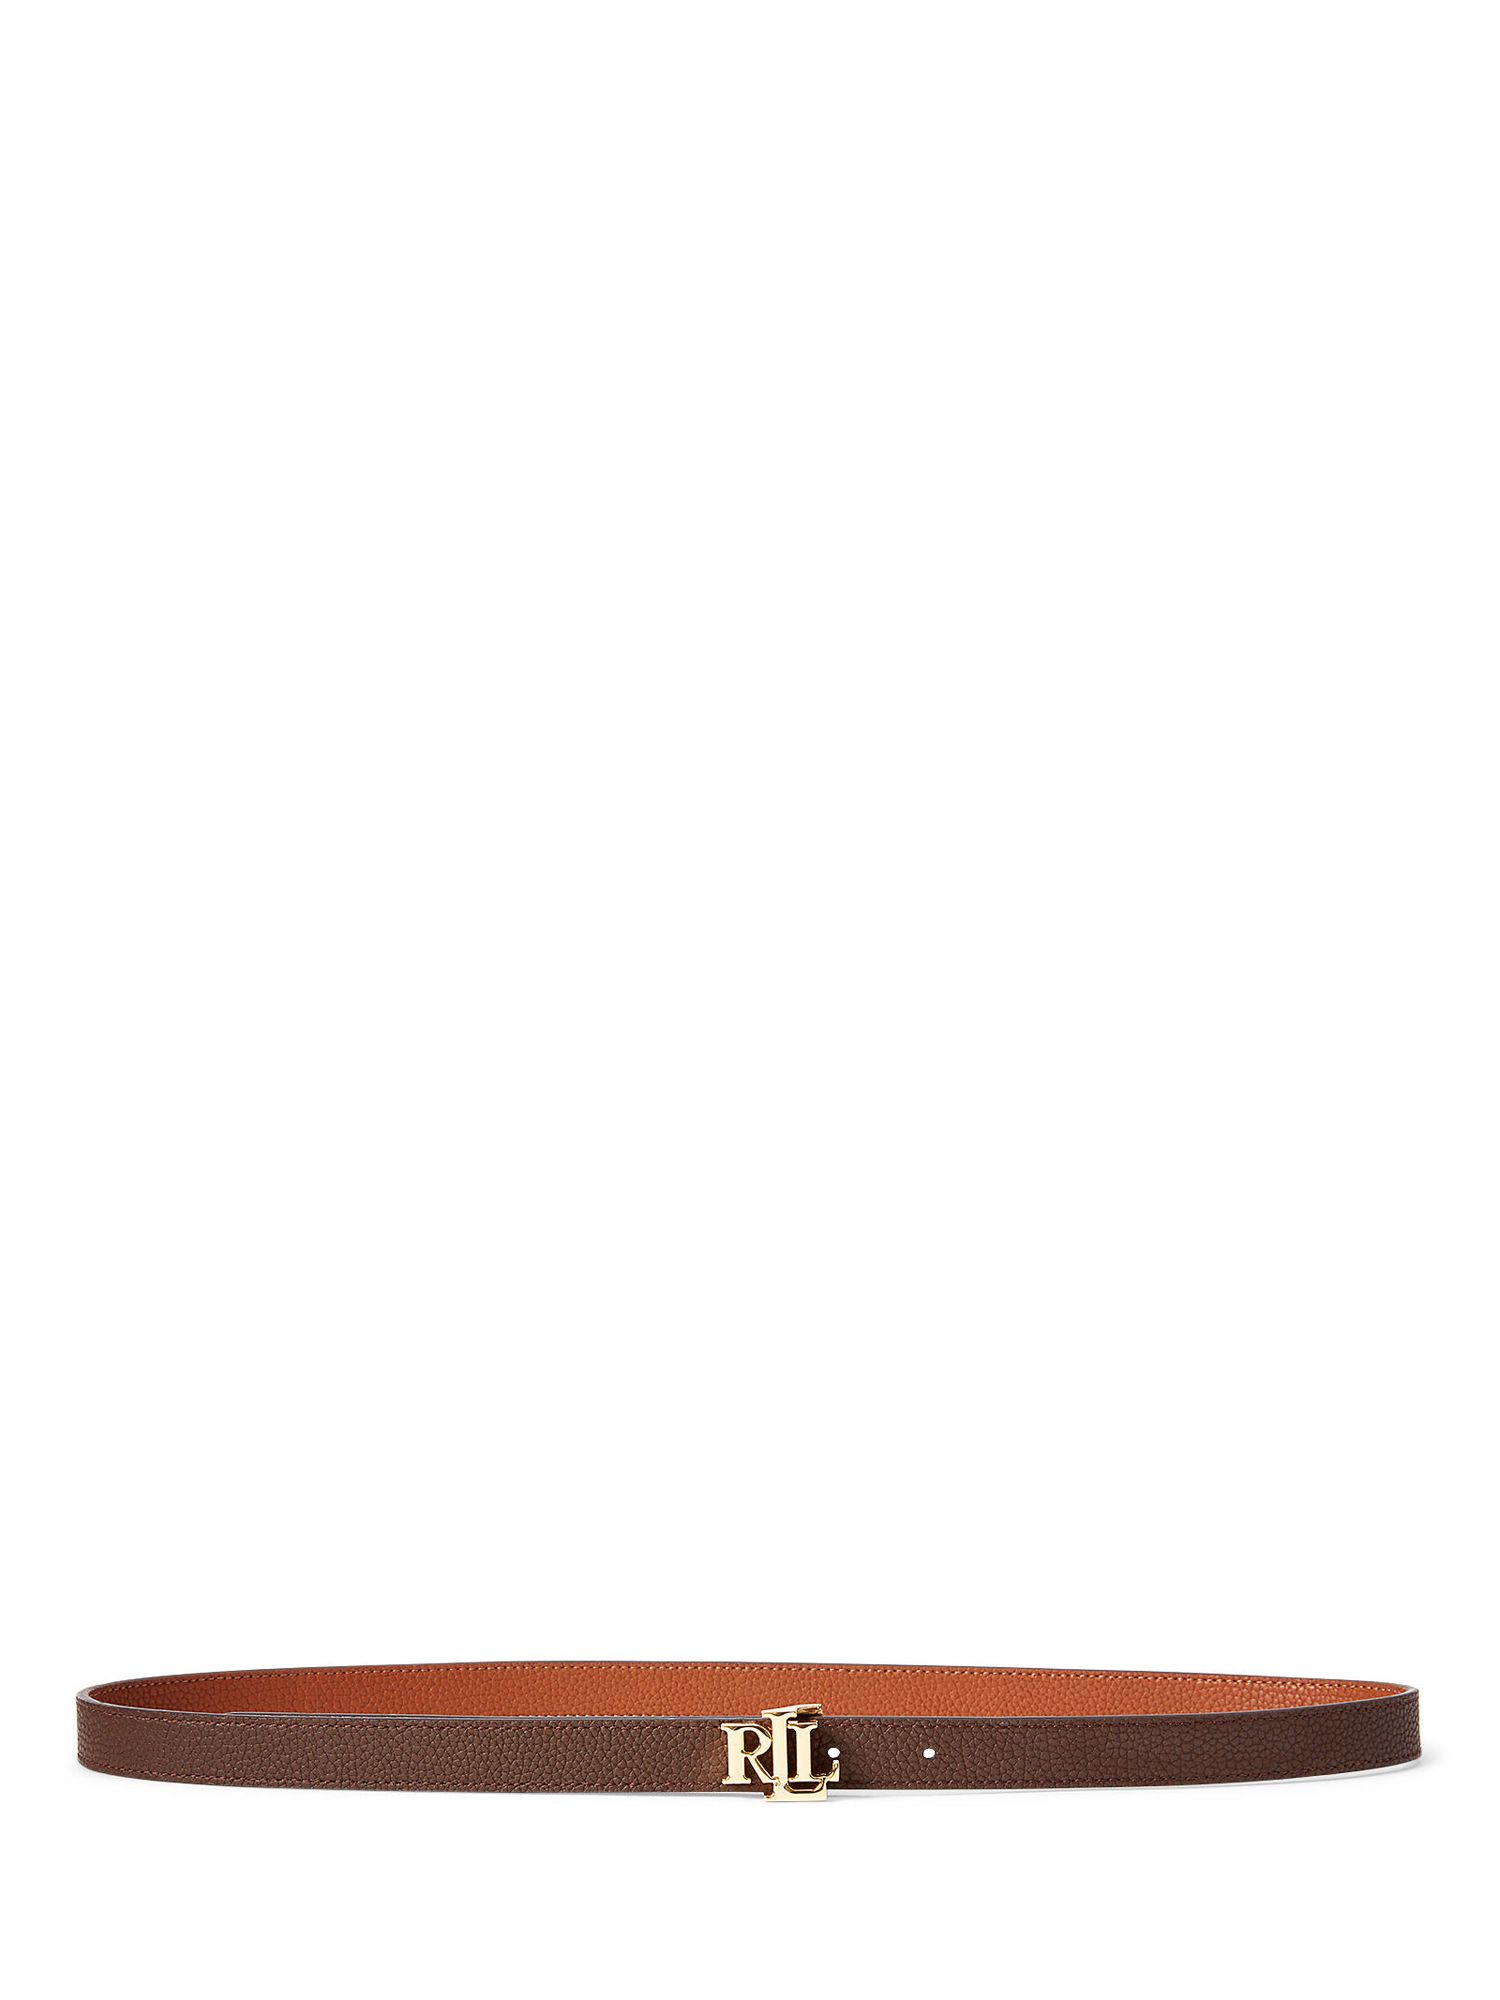 Lauren Ralph Lauren 20 Reversible Leather Belt, Lauren Tan/Brown, XS